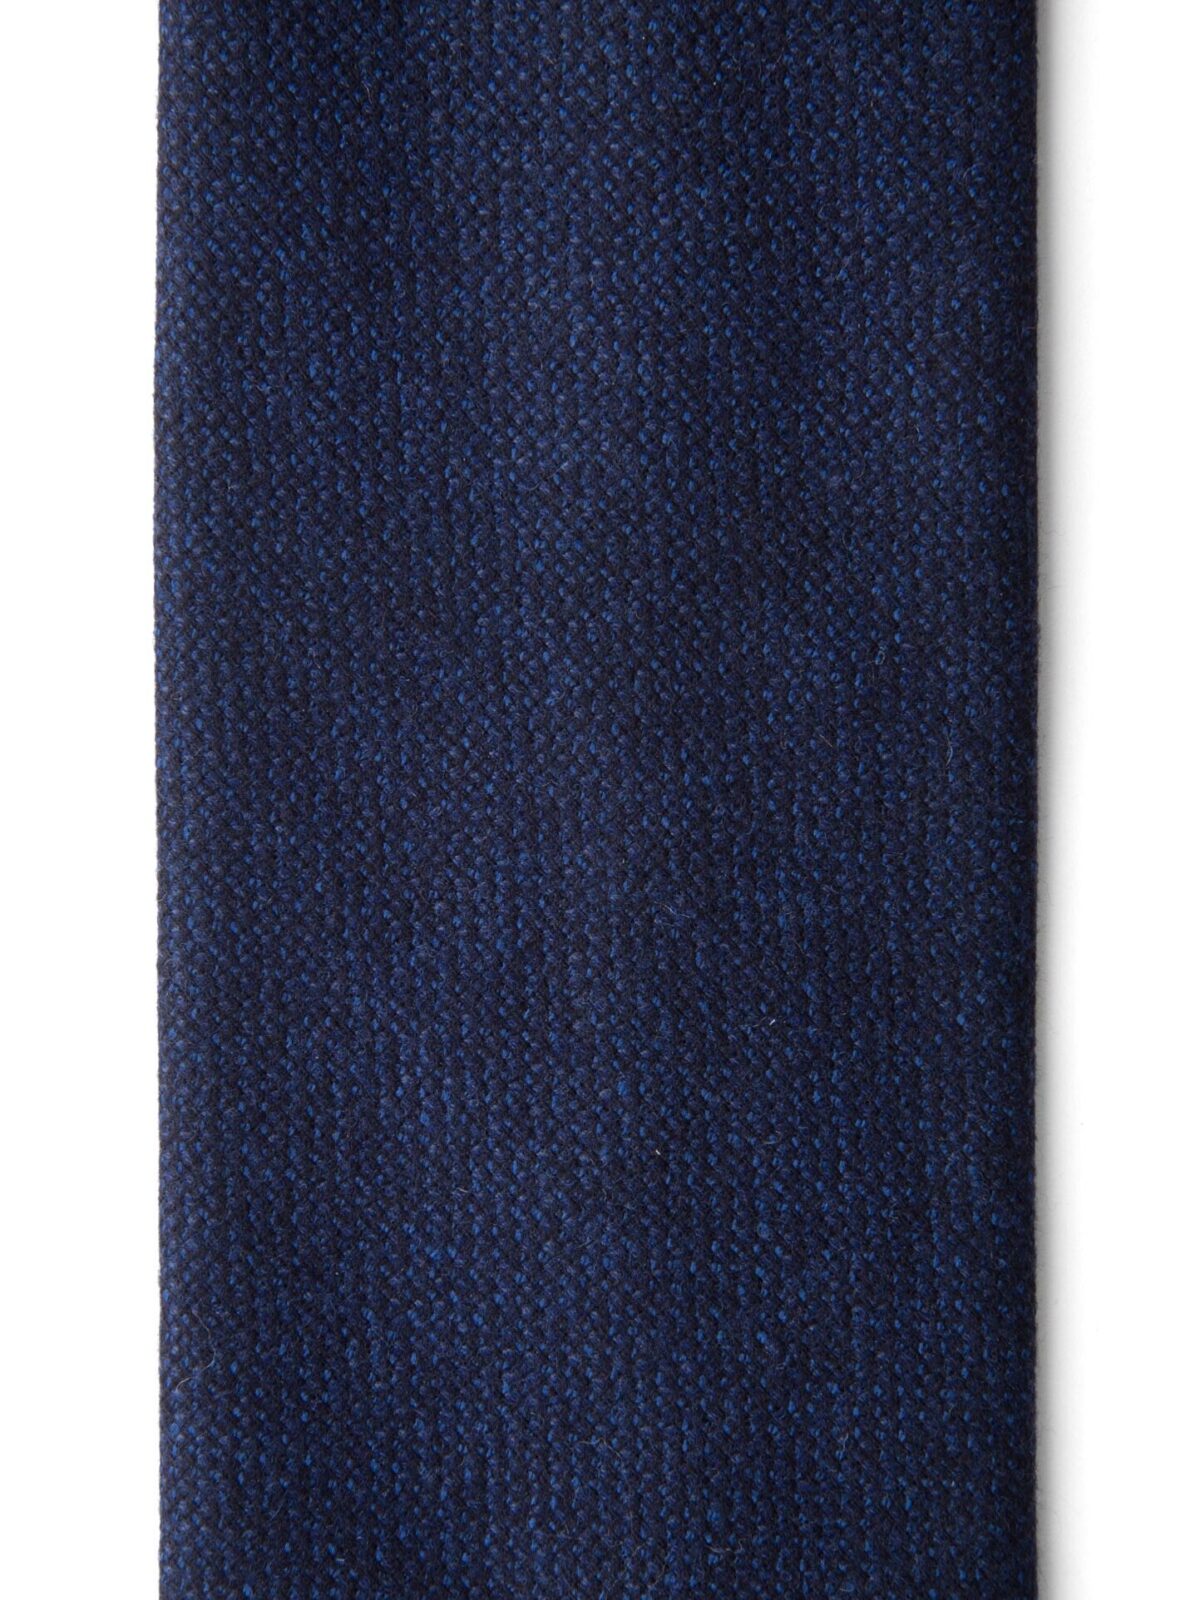 Dark Indigo Solid Wool Tie